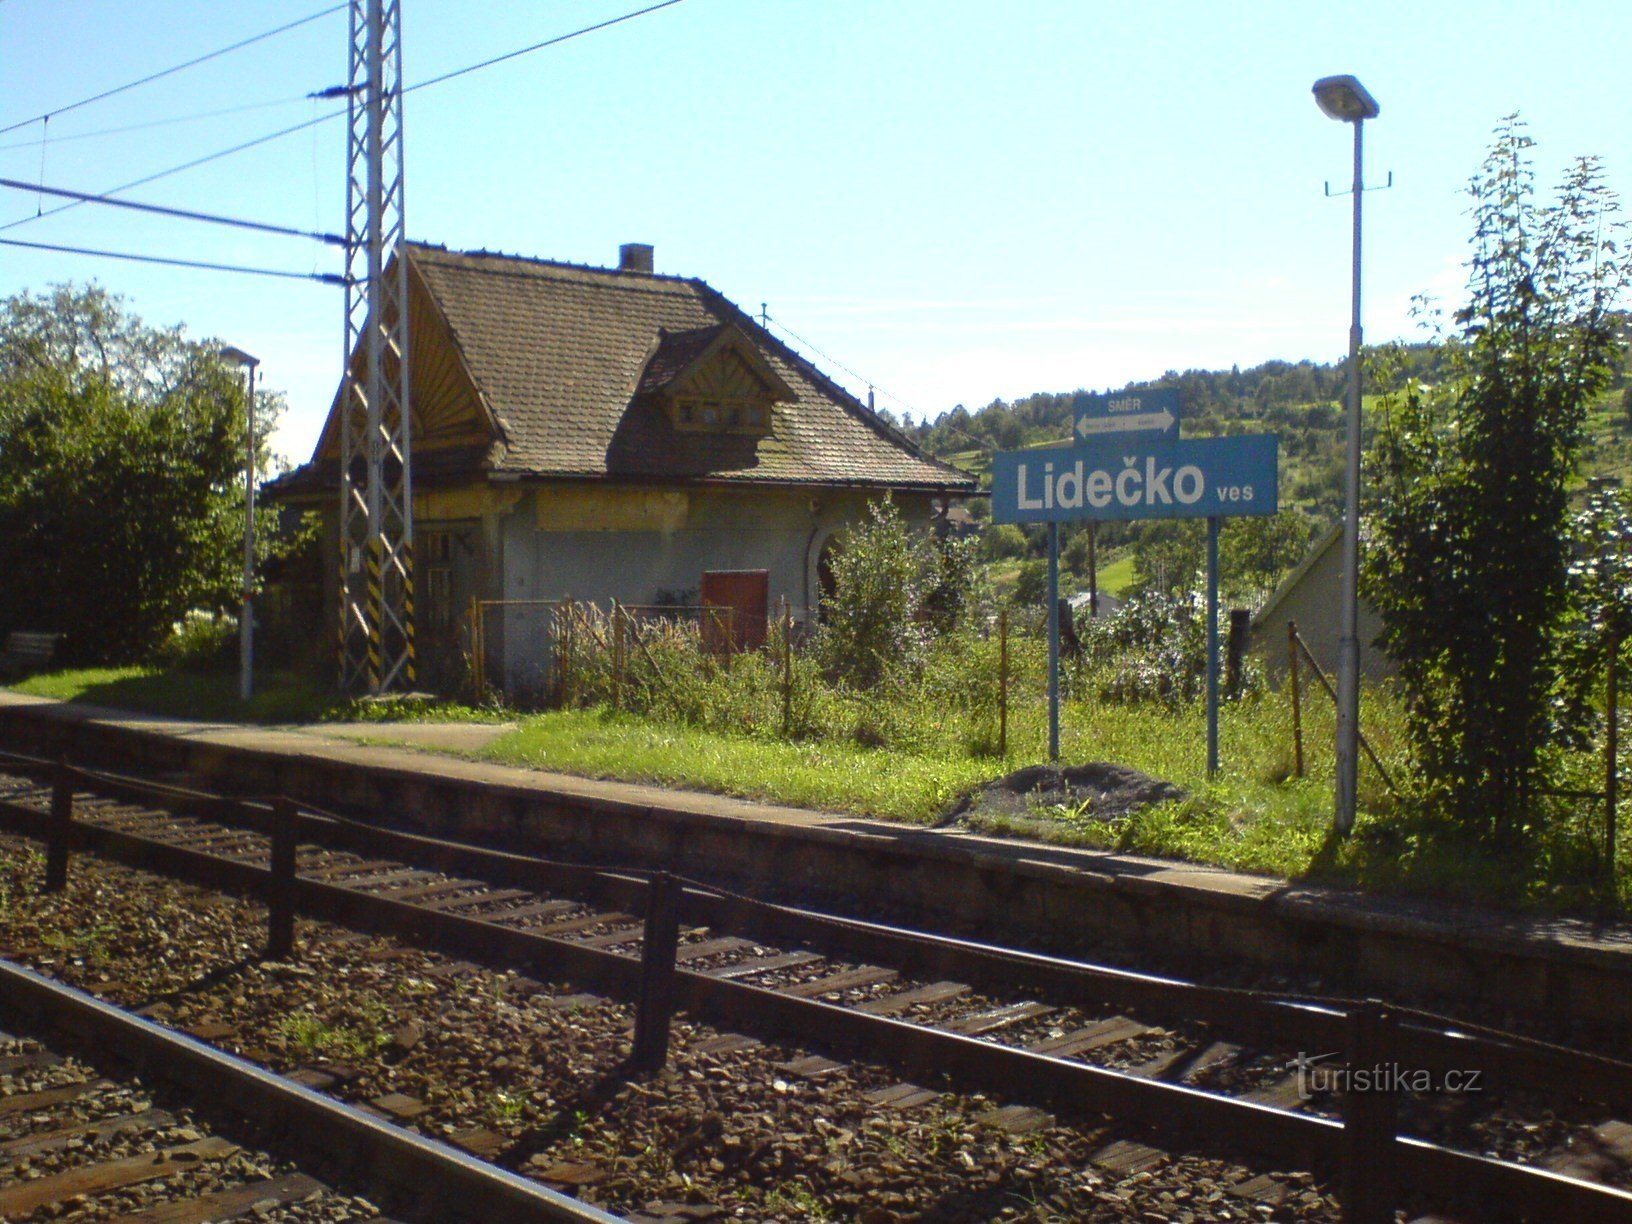 Lidečko selo - željeznička stanica